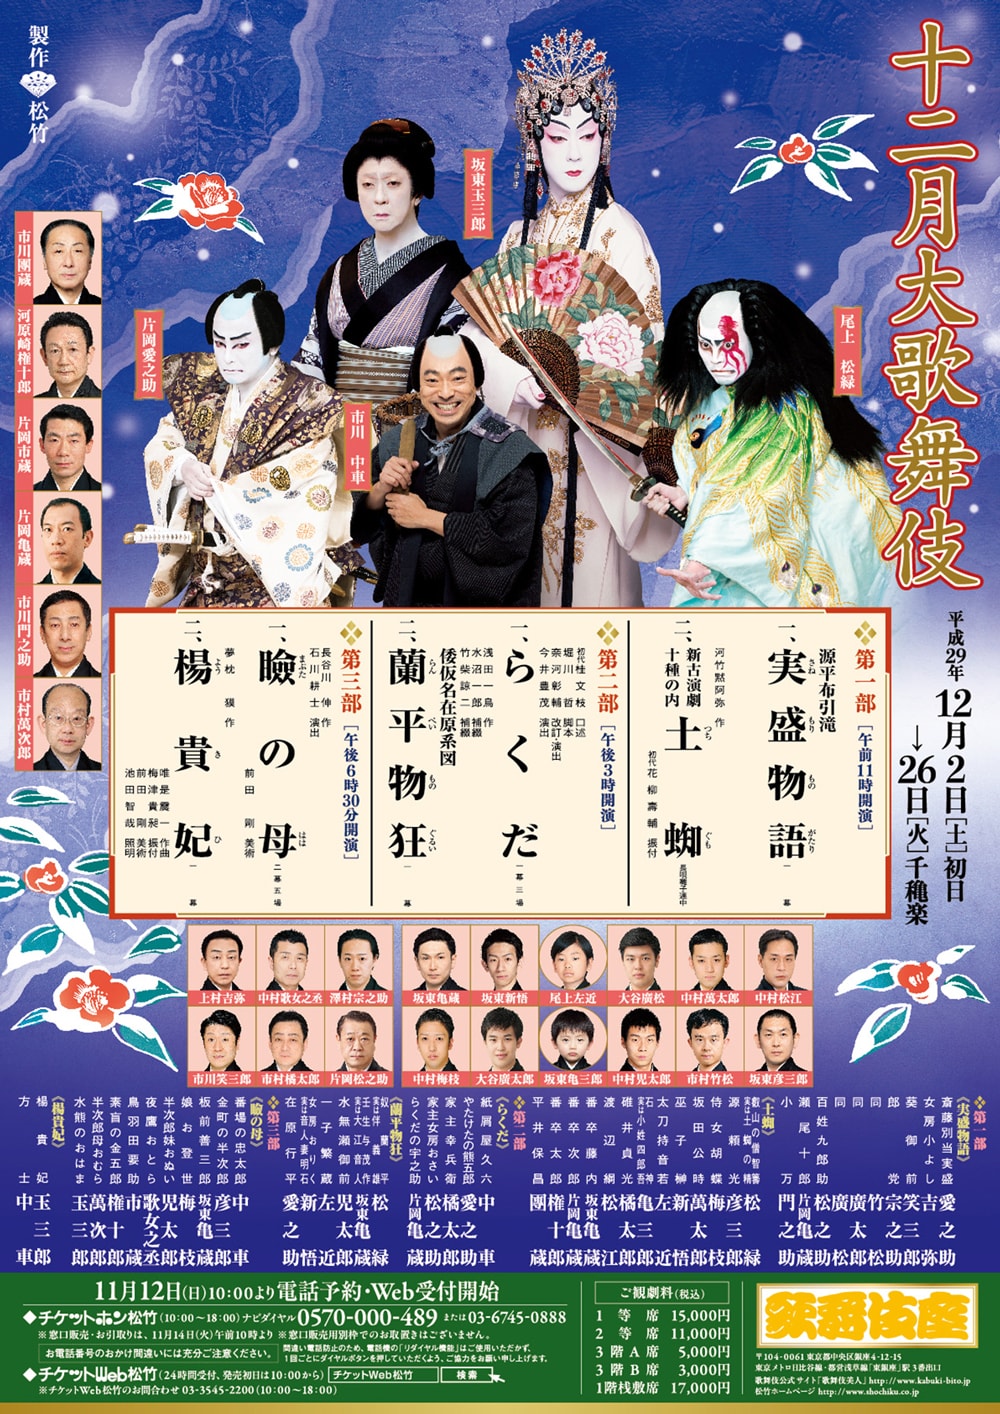 December at the kabukiza